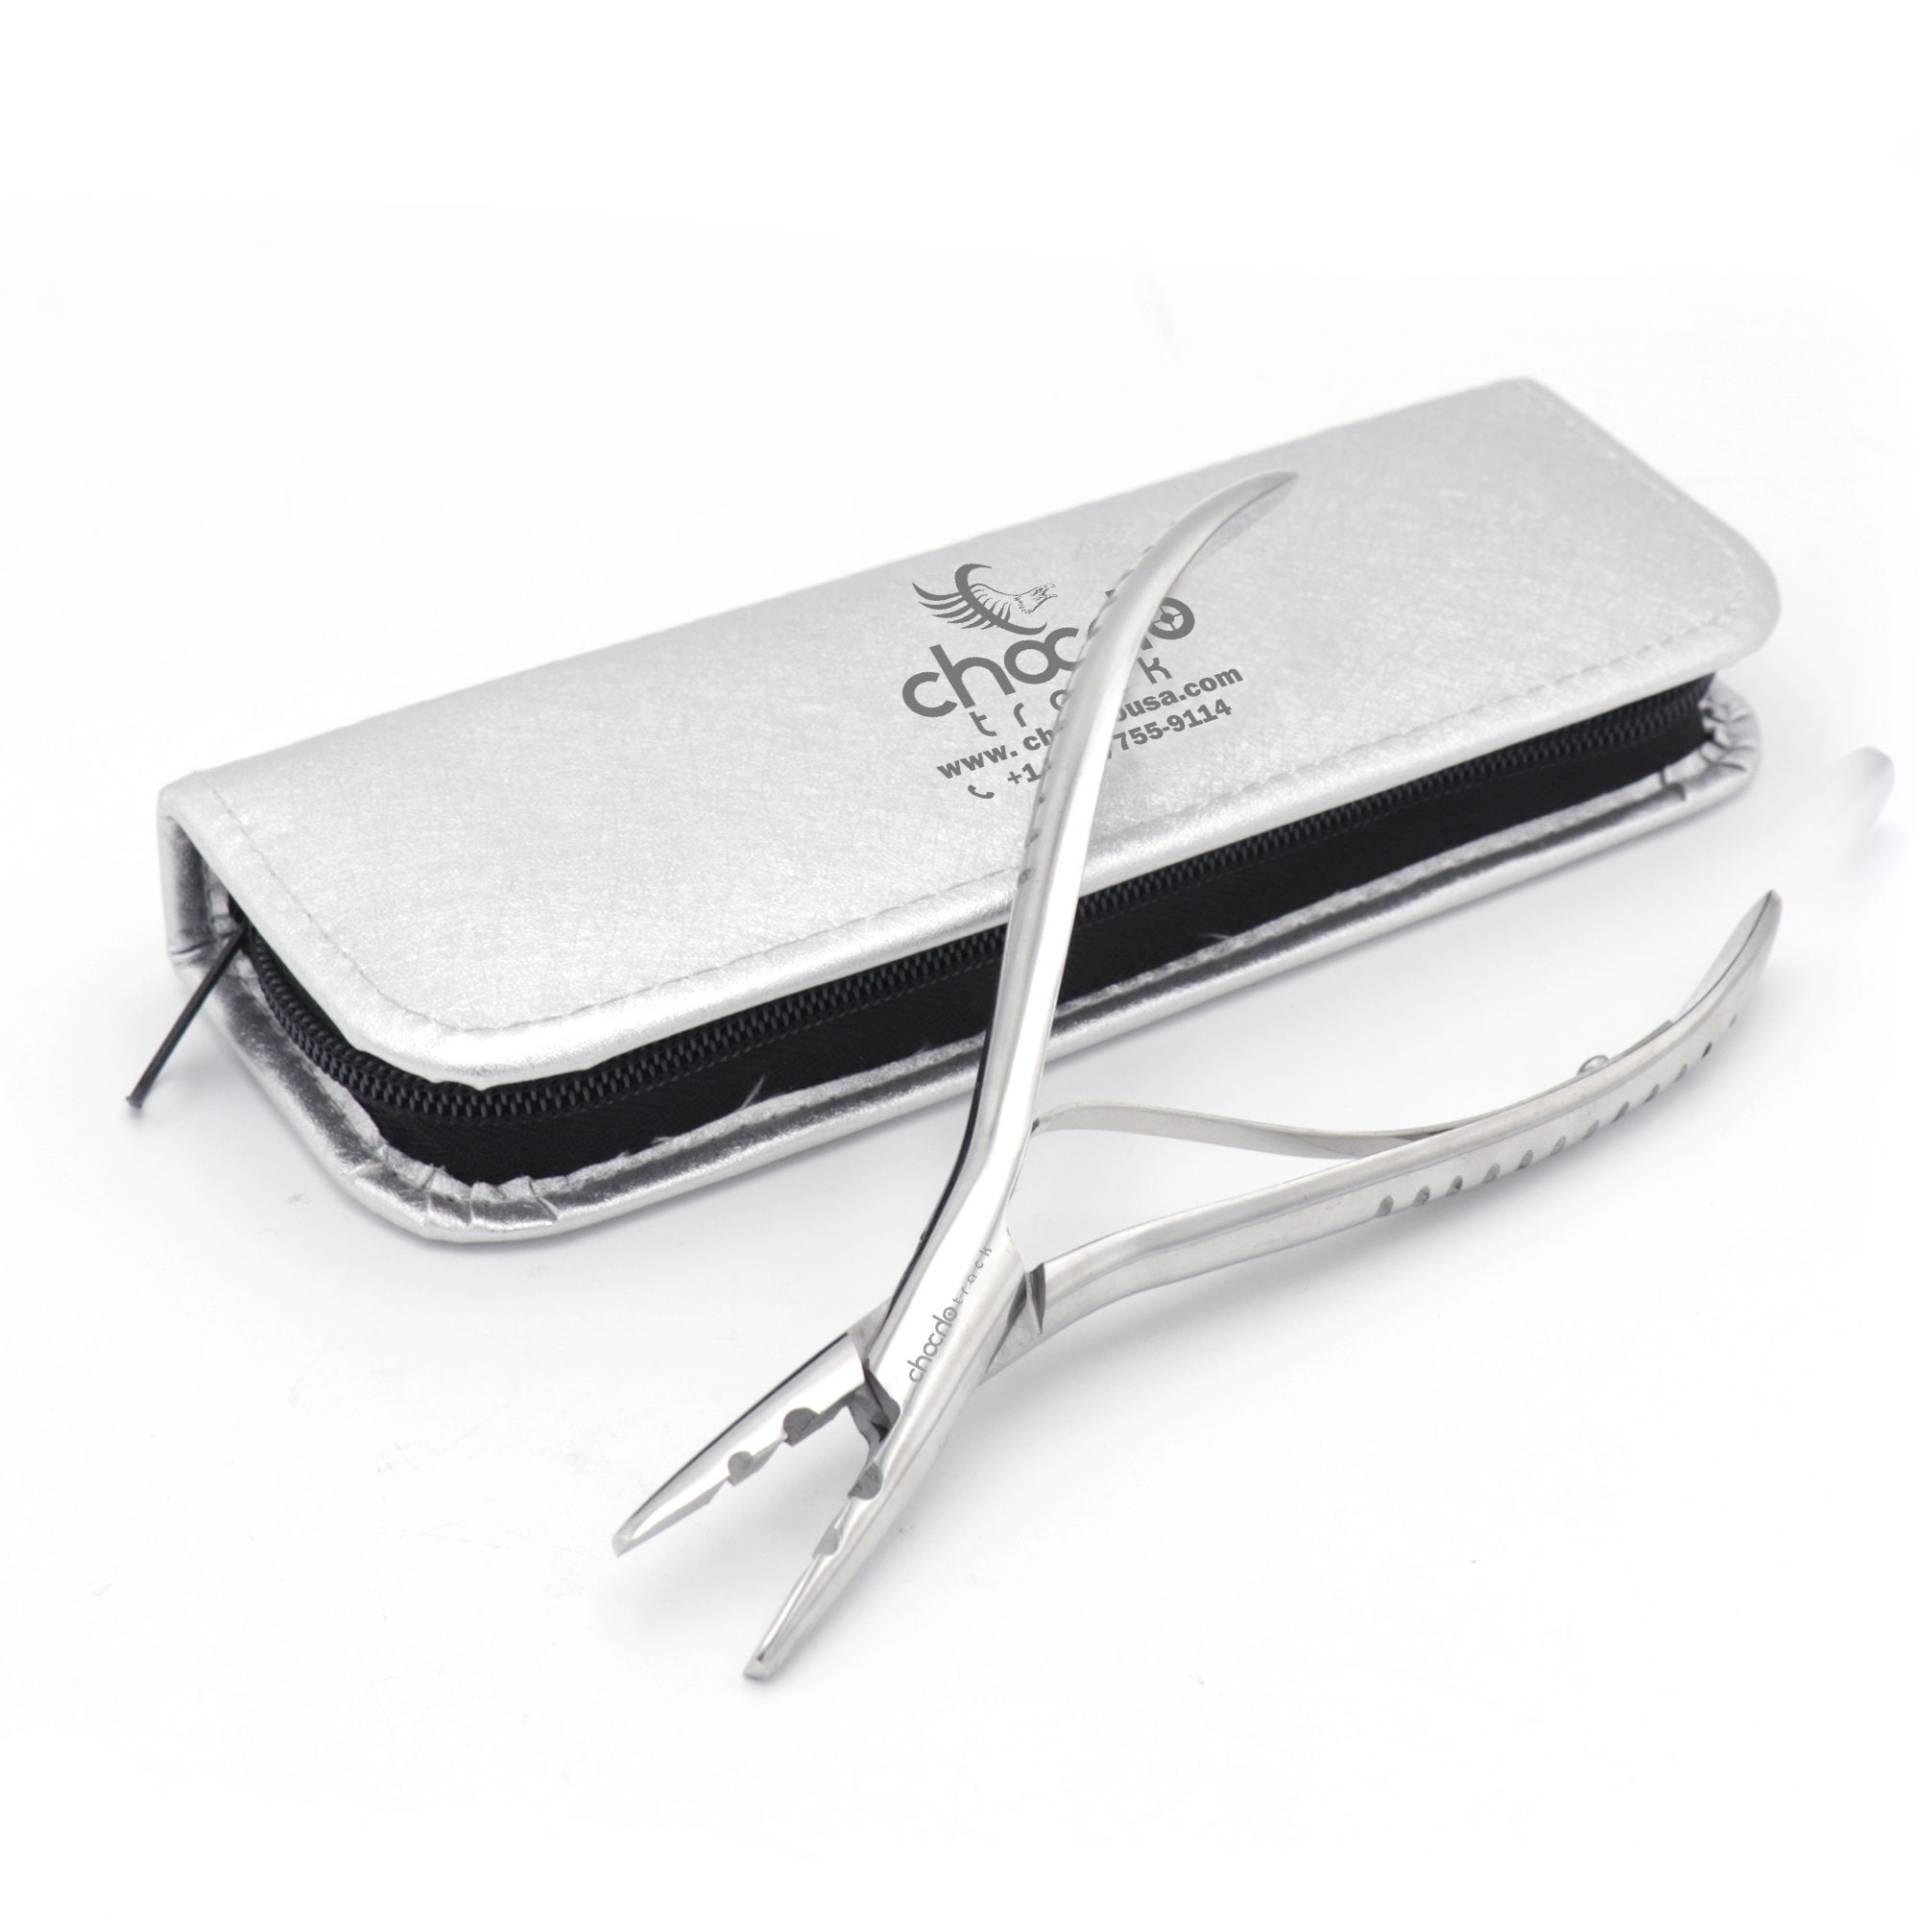 Chocho Pro 7" Lange Haarverlängerung Zange Haare Styling Tool Kit Micro Perlen Näher Plier von ChochoTrack